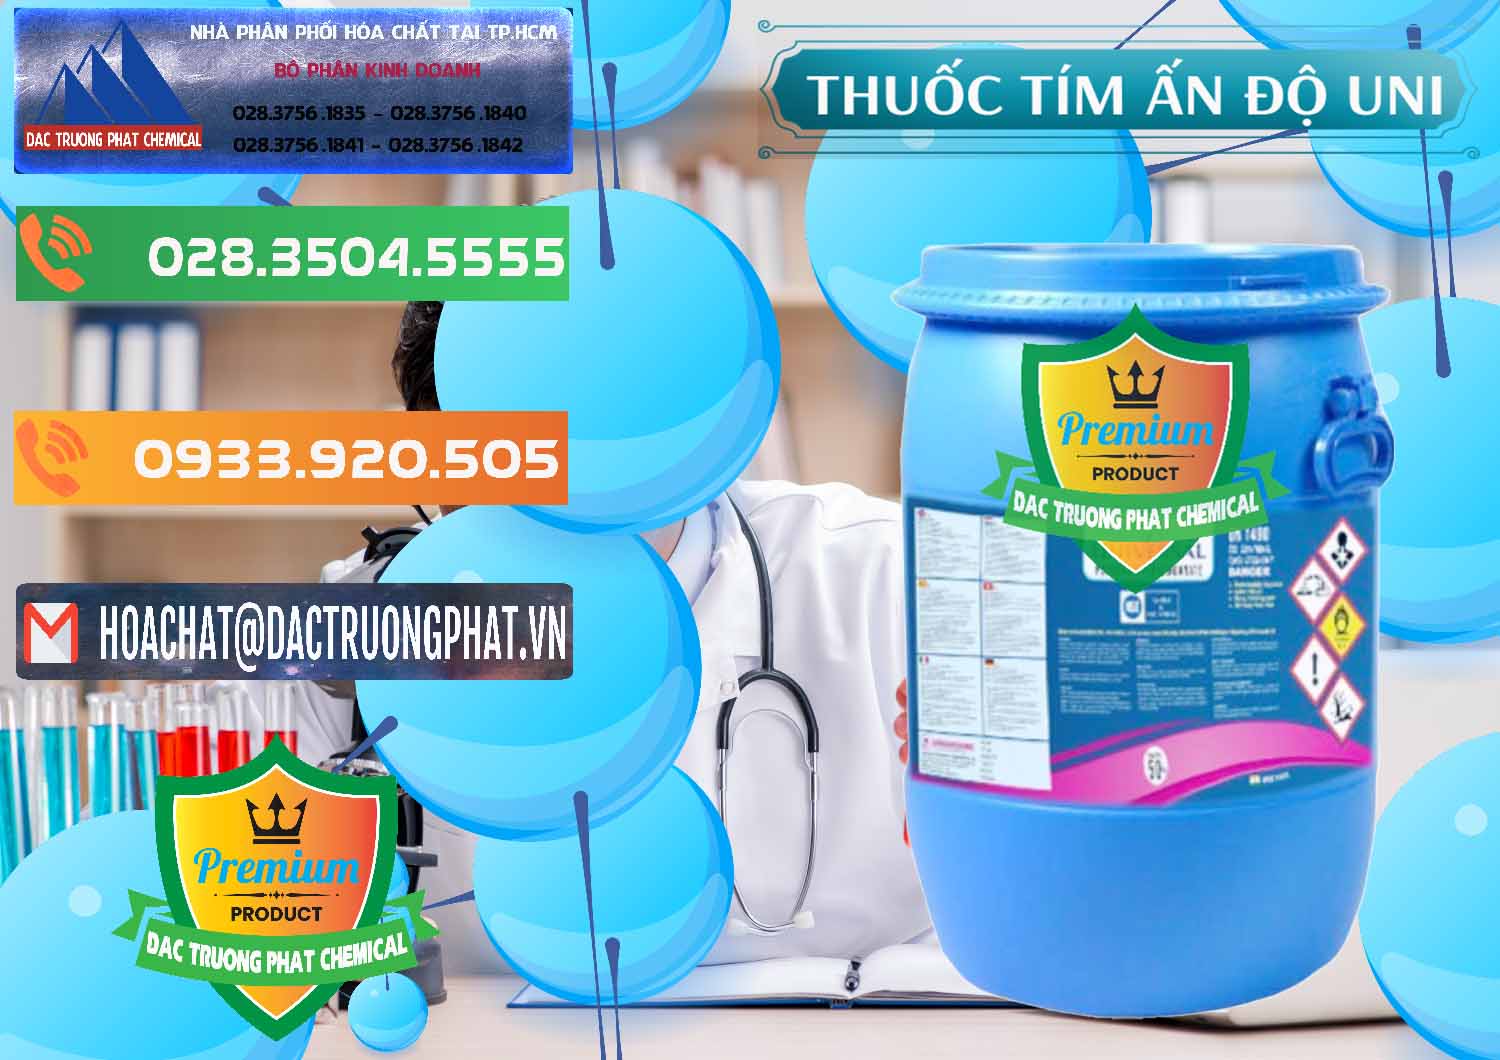 Phân phối _ bán Thuốc Tím - KMNO4 Universal Ấn Độ India - 0419 - Cty chuyên phân phối ( bán ) hóa chất tại TP.HCM - hoachatxulynuoc.com.vn